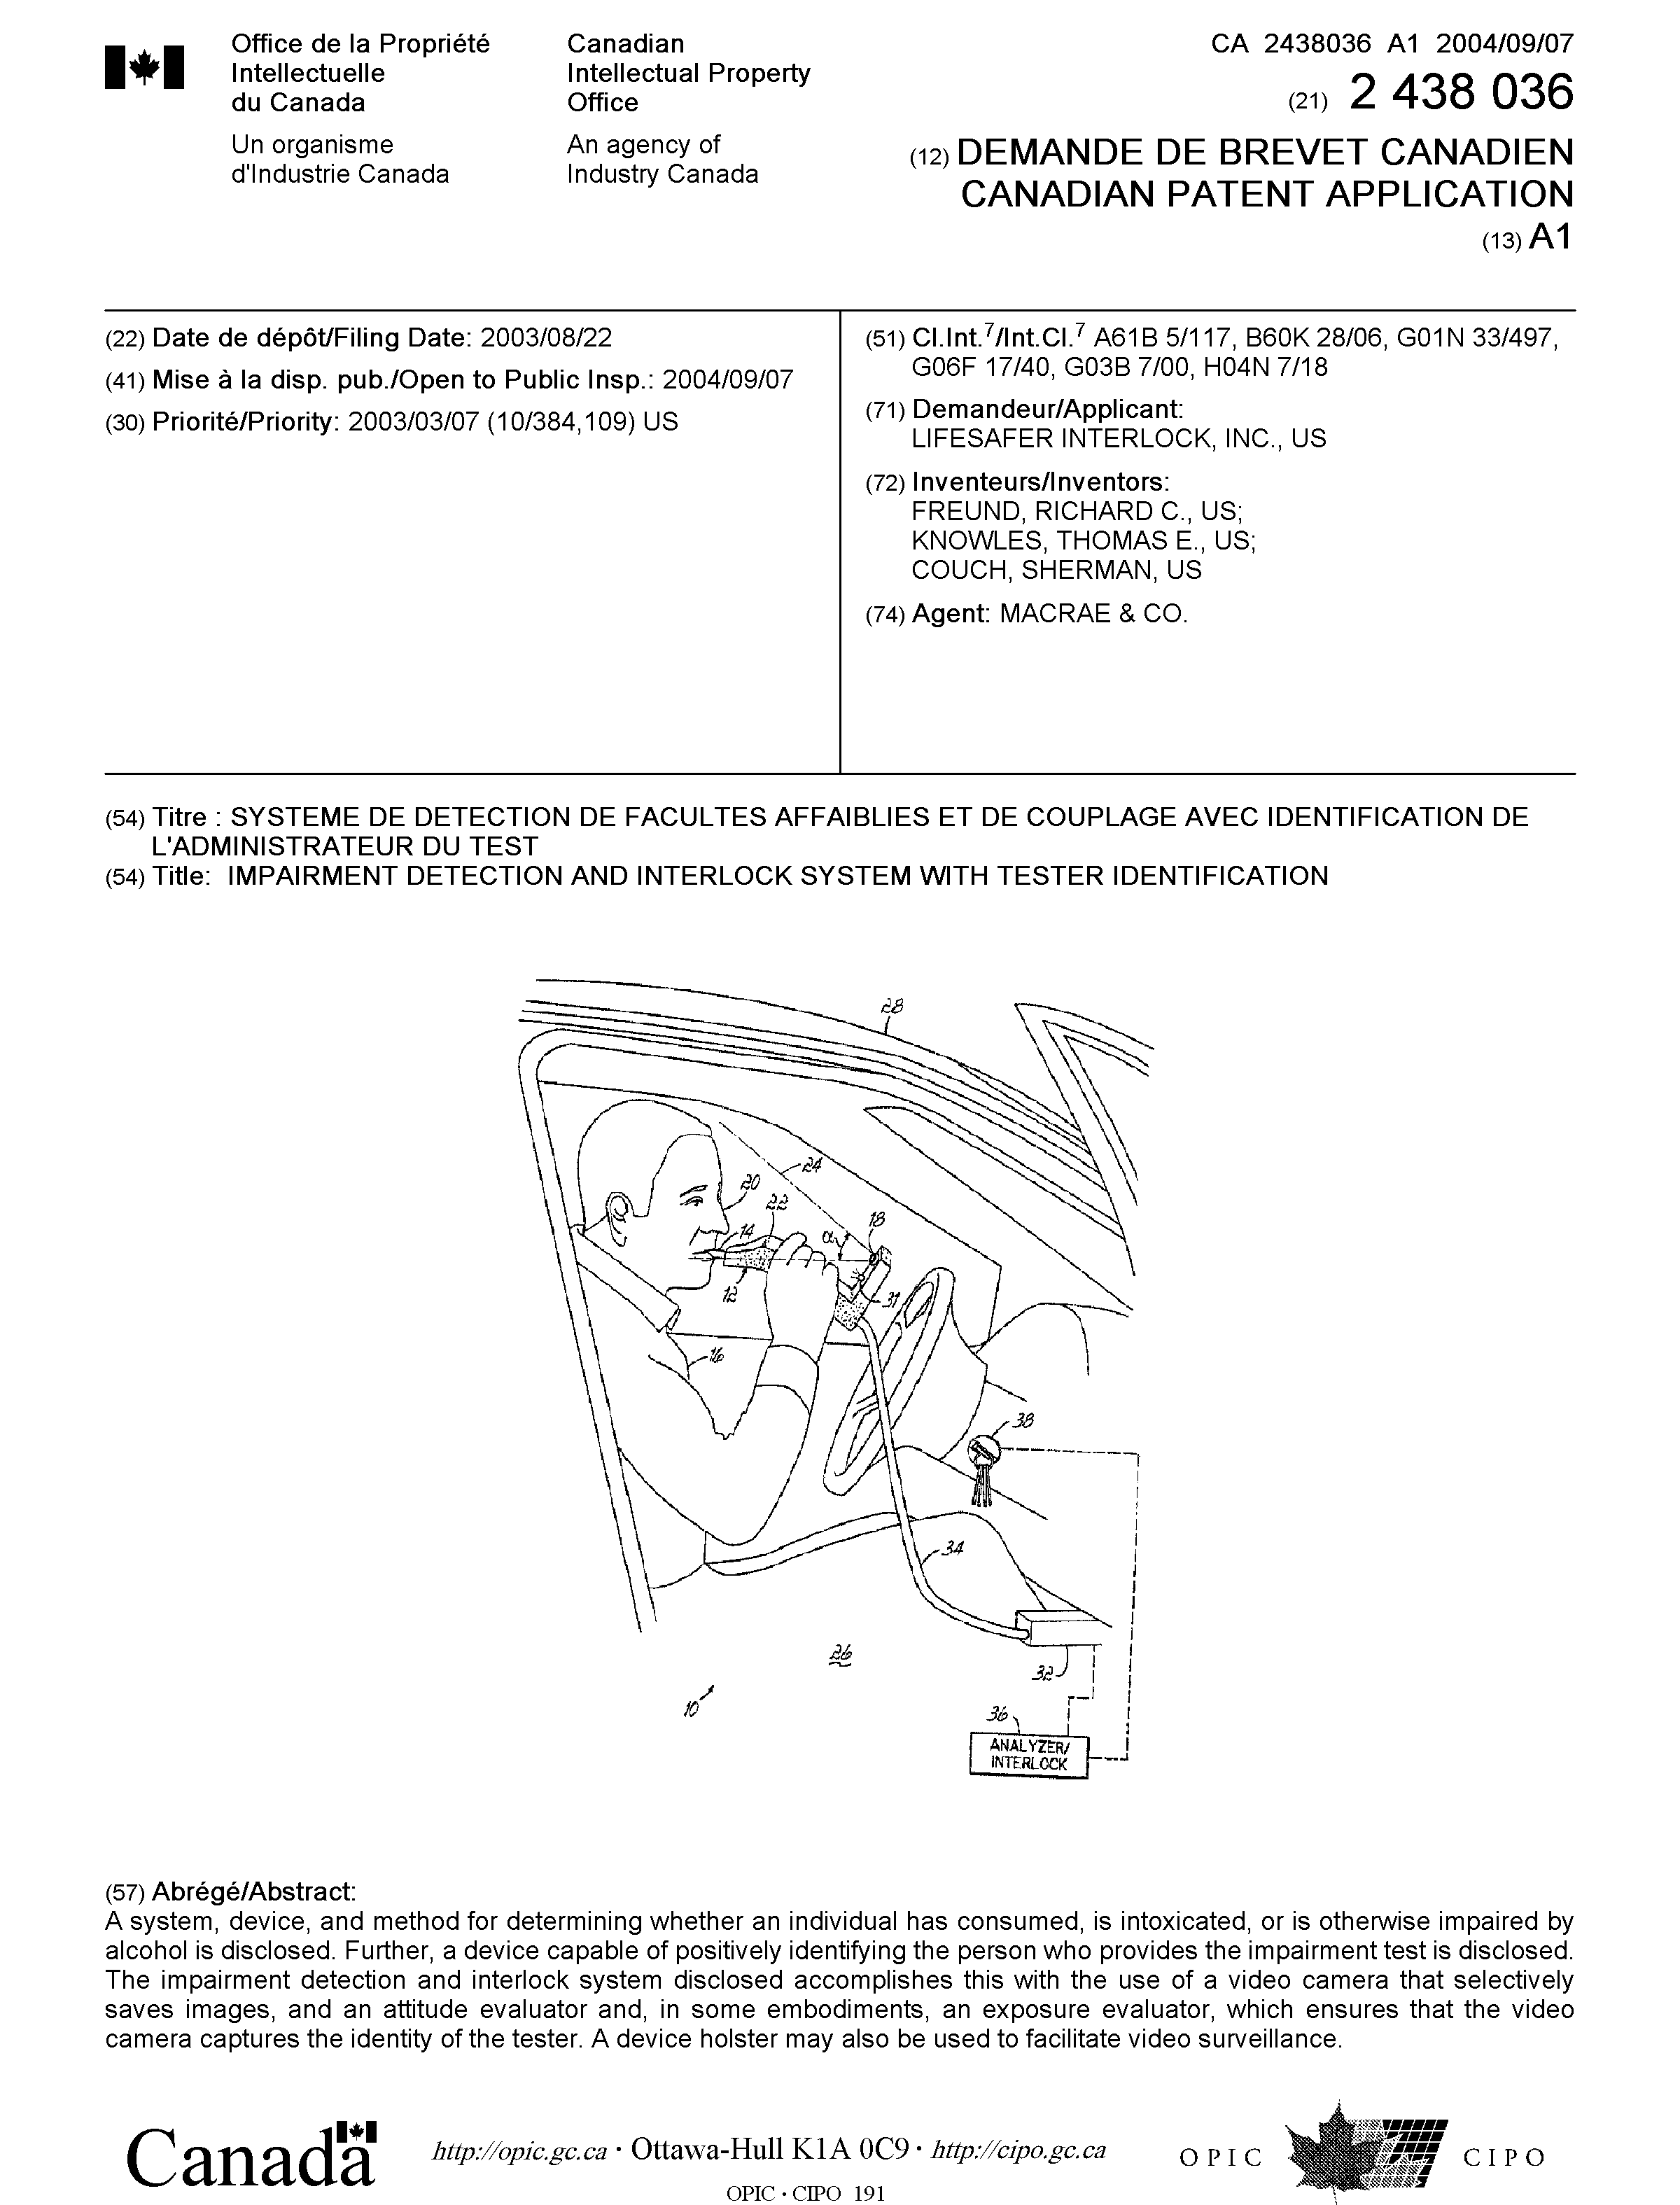 Document de brevet canadien 2438036. Page couverture 20040817. Image 1 de 1